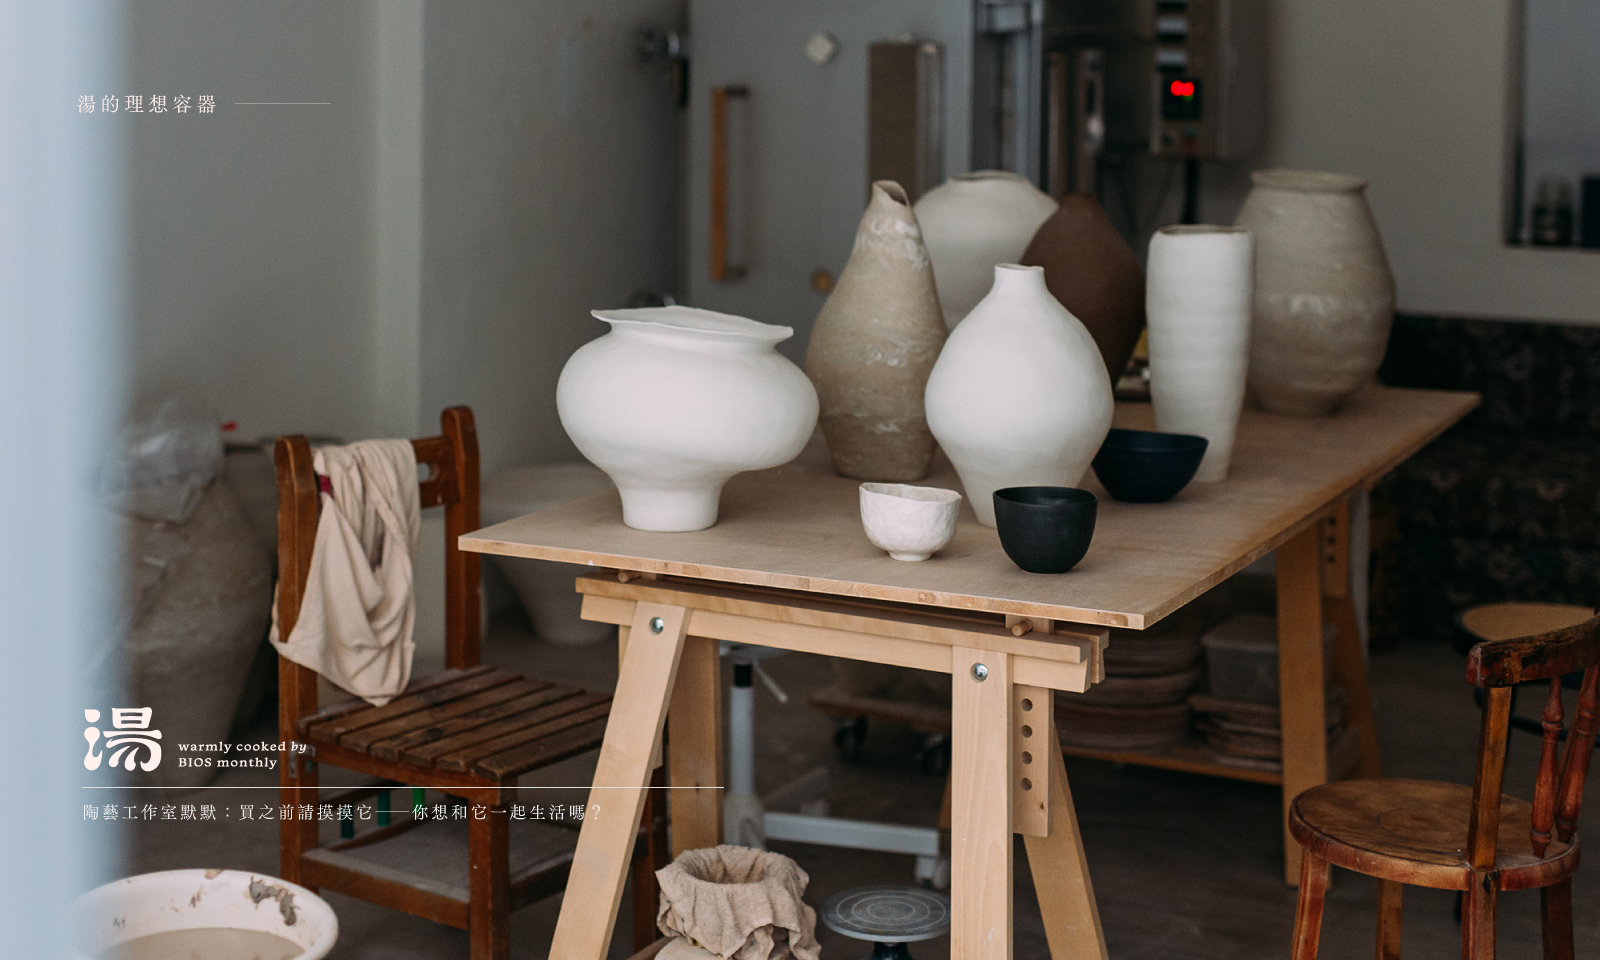 湯的理想容器｜陶藝工作室「默默」：買之前請摸摸它──你想和它一起生活嗎？